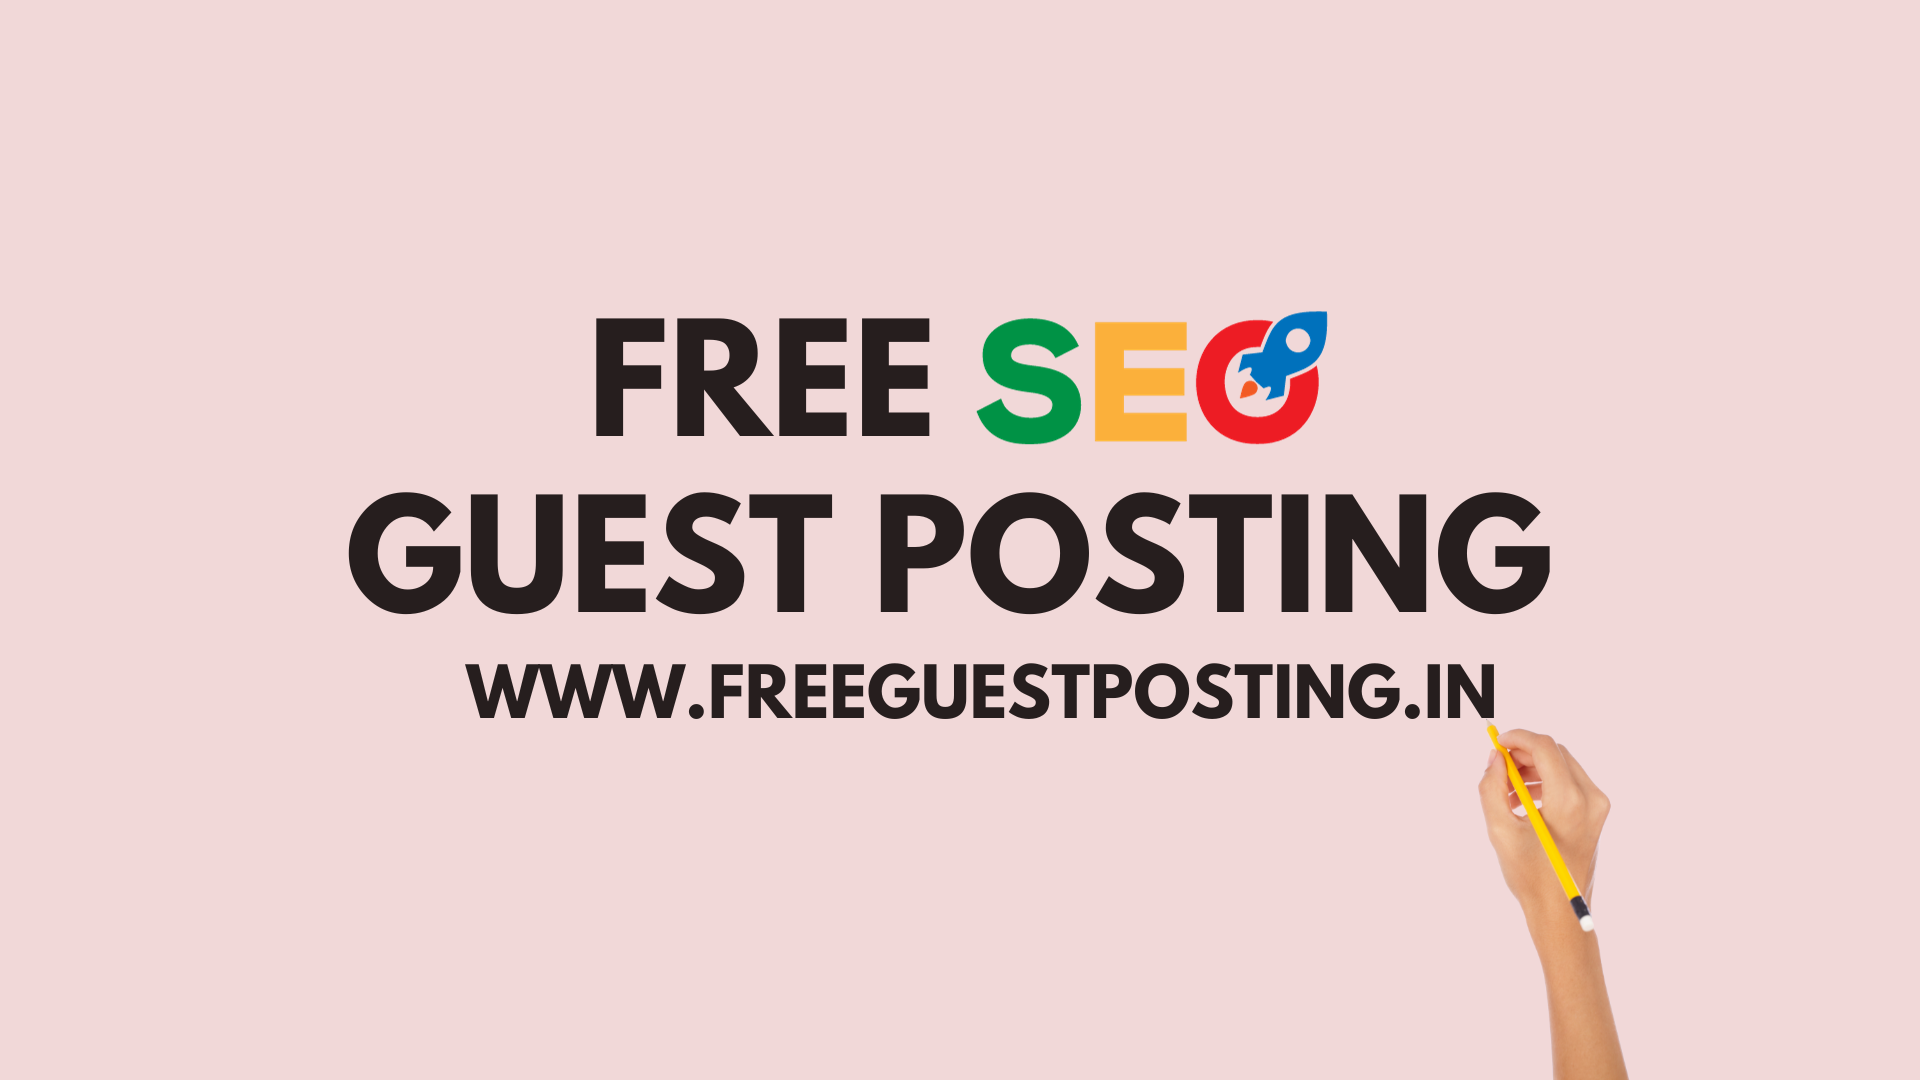 Free Seo Guest Posting | www.freeguestposting.in